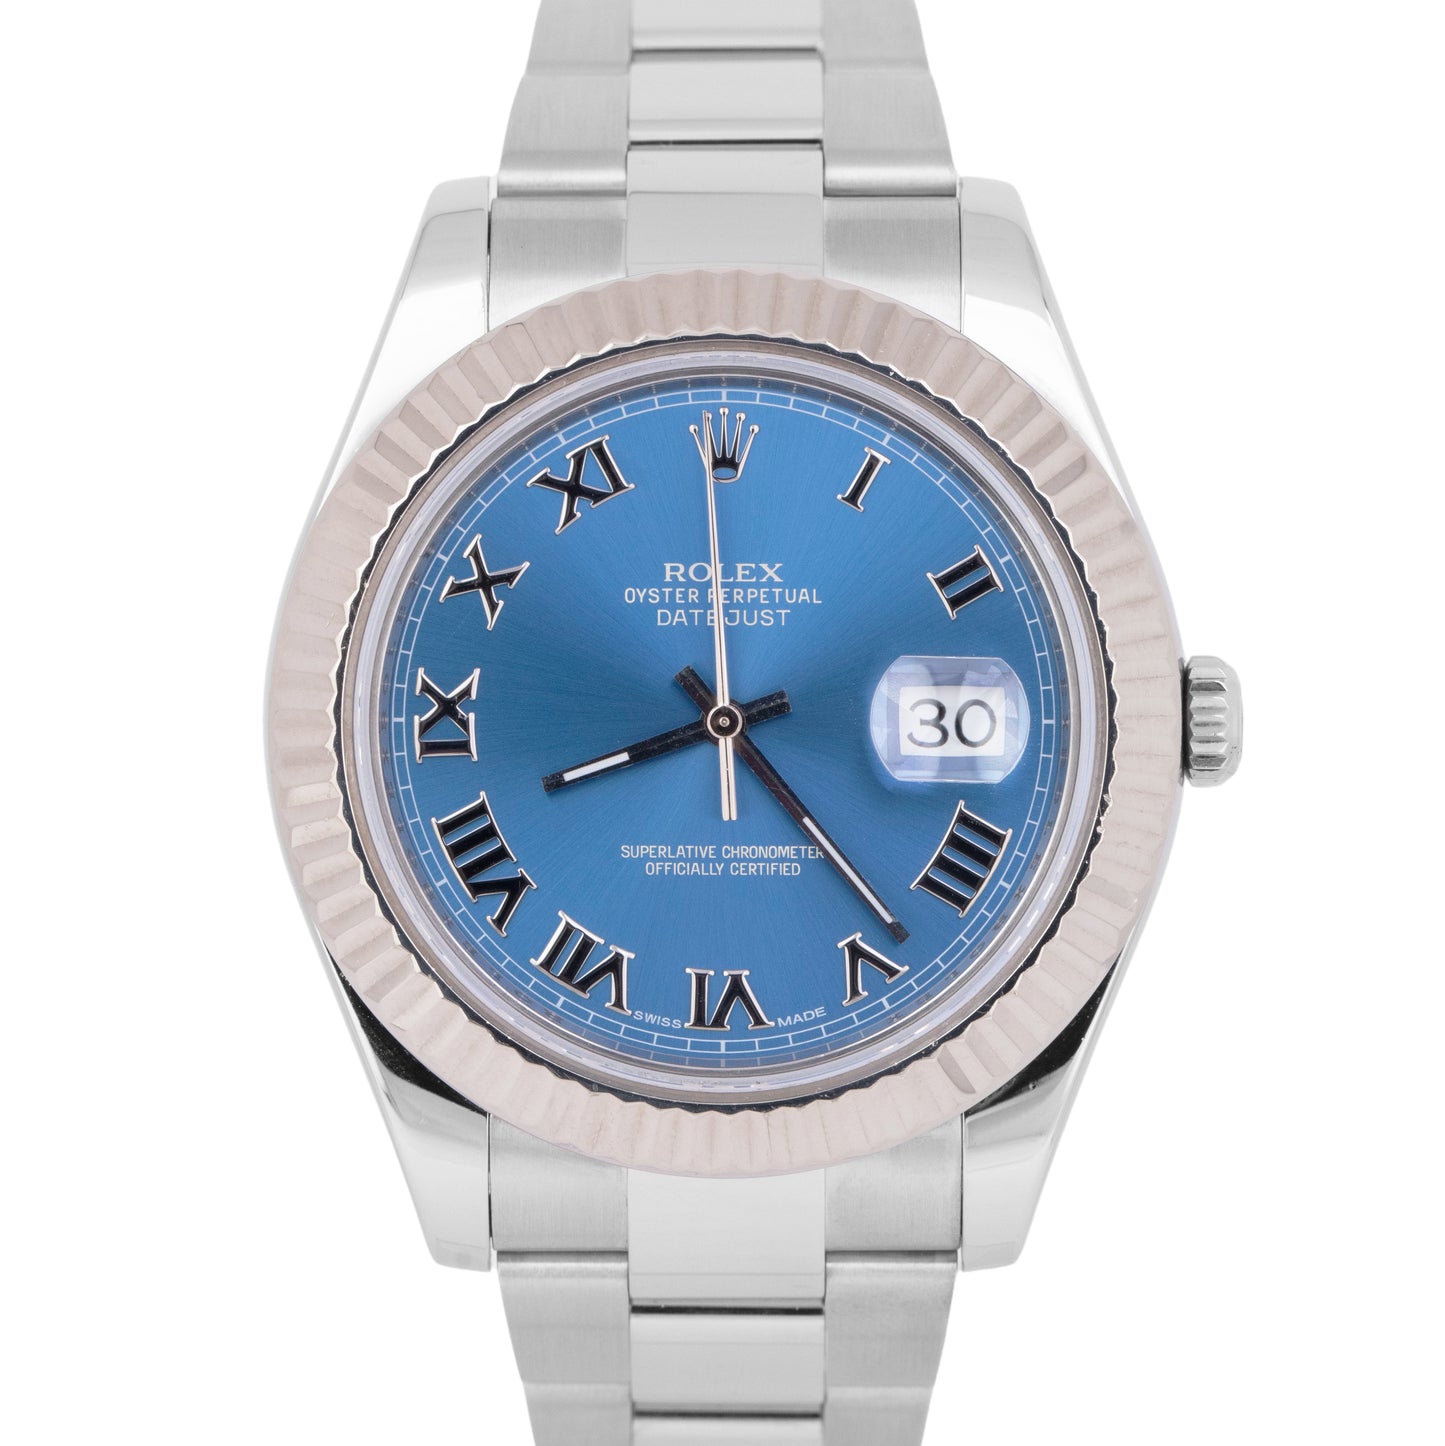 MINT Rolex Datejust II Azzurro Blue Dial 41MM Steel 18K White Gold Watch 116334